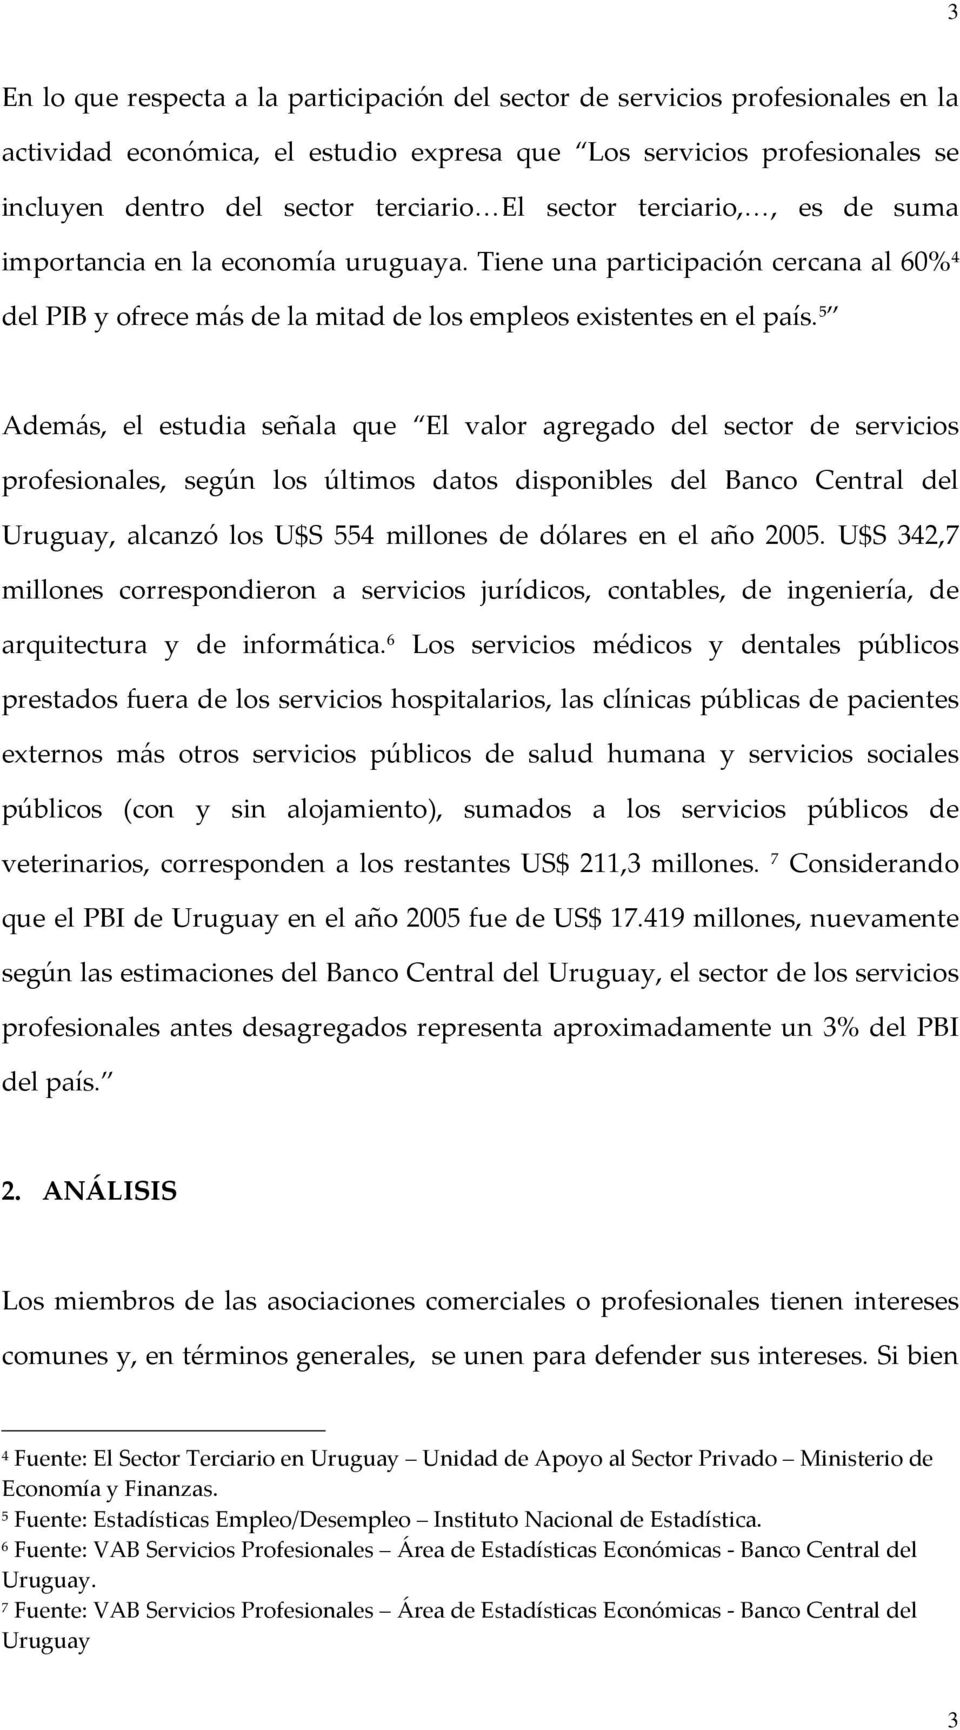 5 Además, el estudia señala que El valor agregado del sector de servicios profesionales, según los últimos datos disponibles del Banco Central del Uruguay, alcanzó los U$S 554 millones de dólares en